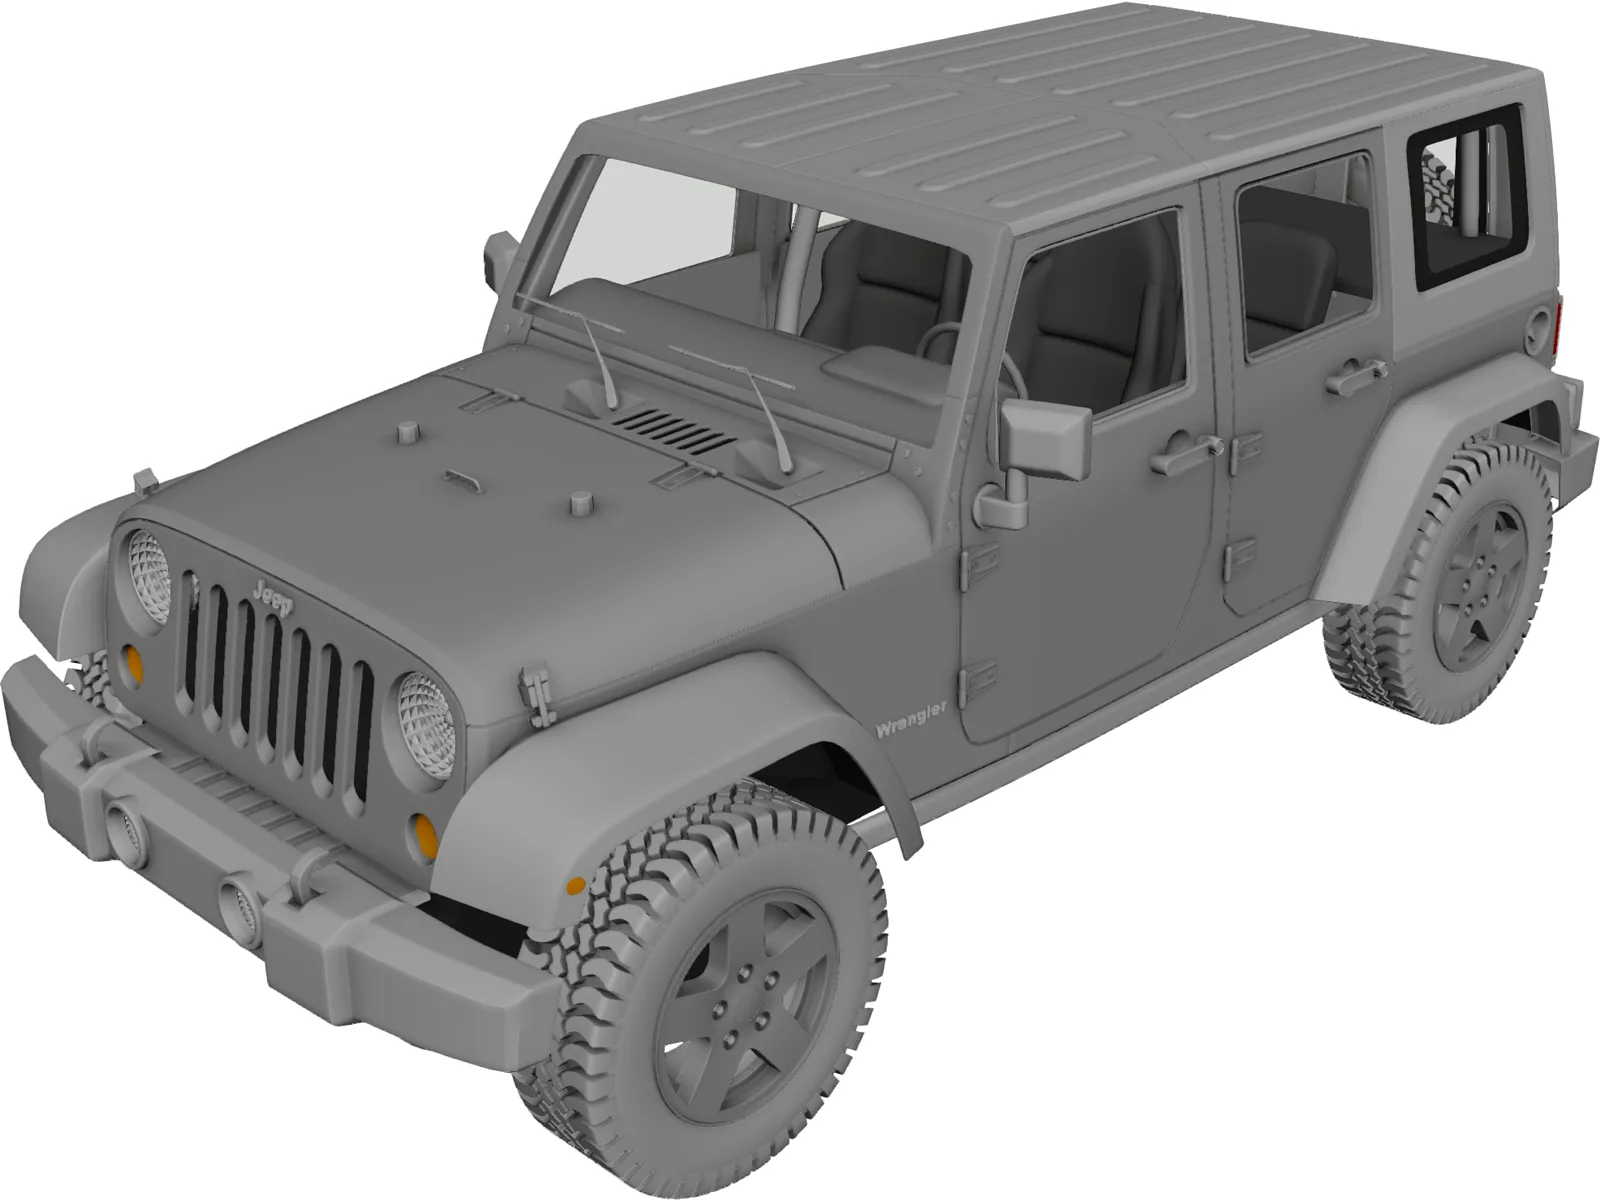 Jeep Wrangler Unlimited 3D Model - 3D CAD Browser